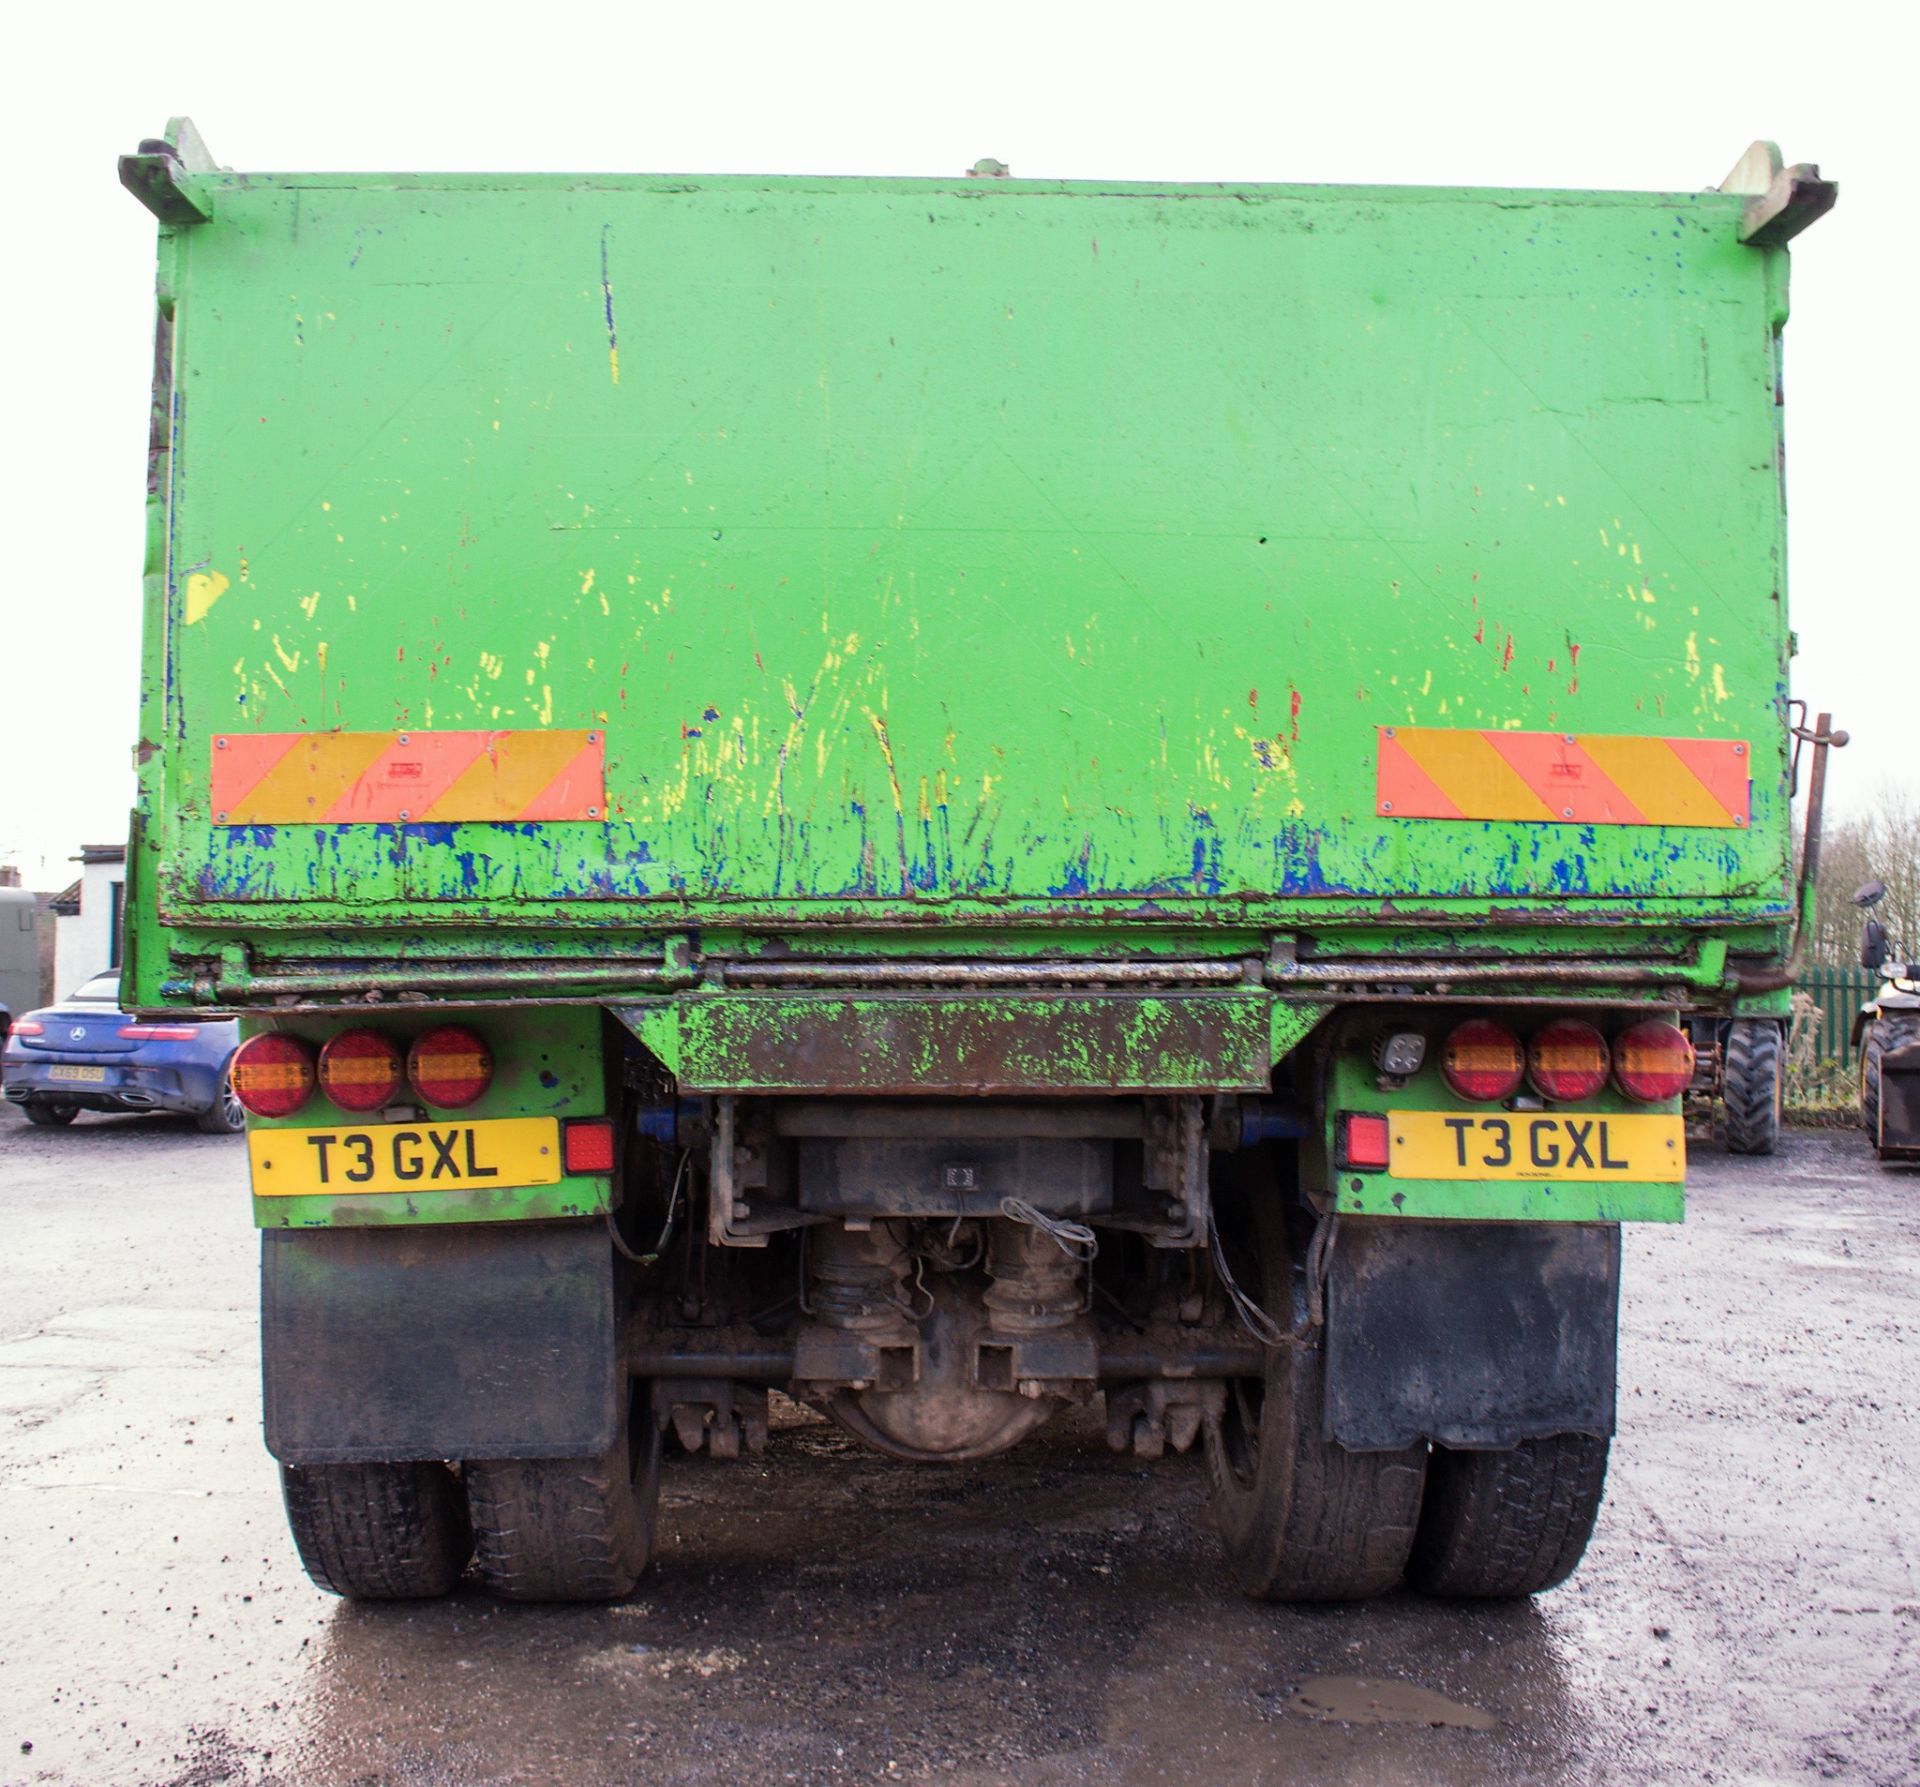 DAF CF 85.340 32 tonne 8 wheel tipper lorry Registration Number: T3 GXL Date of Registration: 17/ - Image 6 of 14